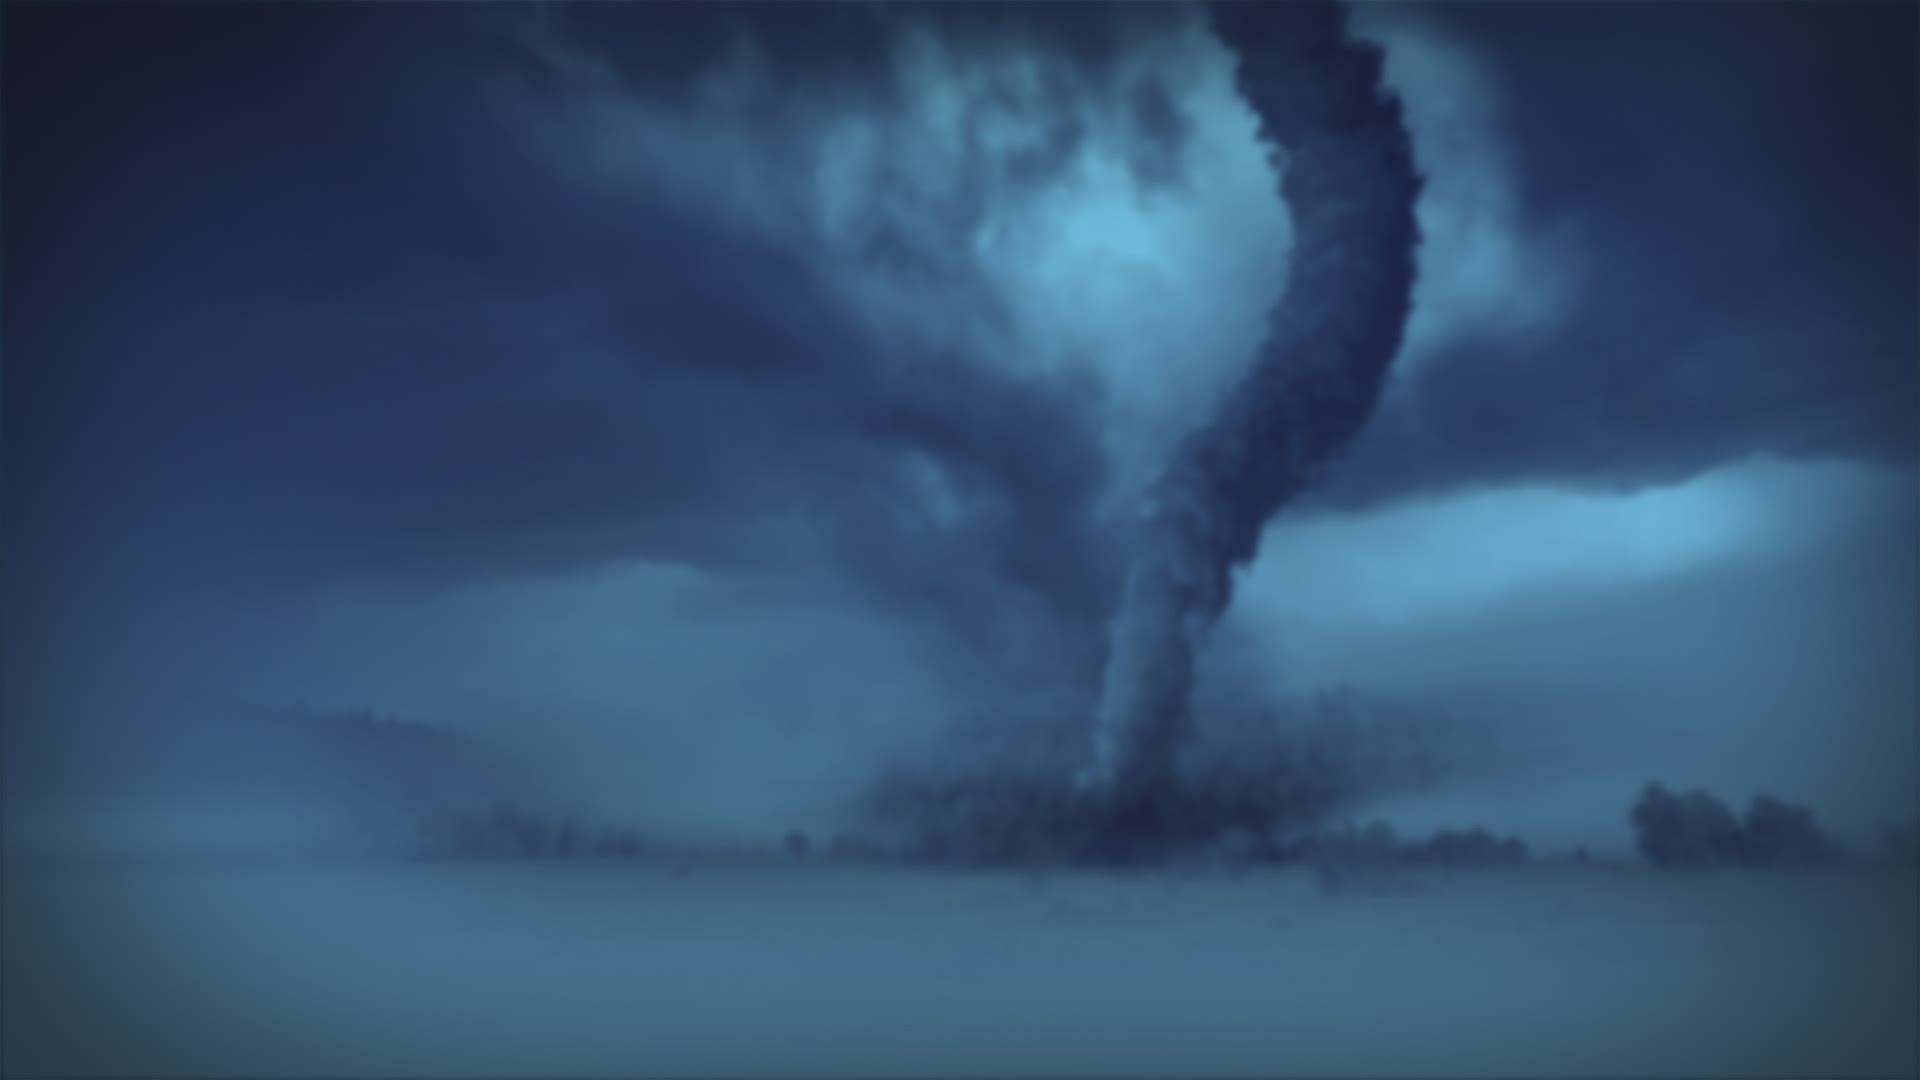 NOAA Tornado FAQ